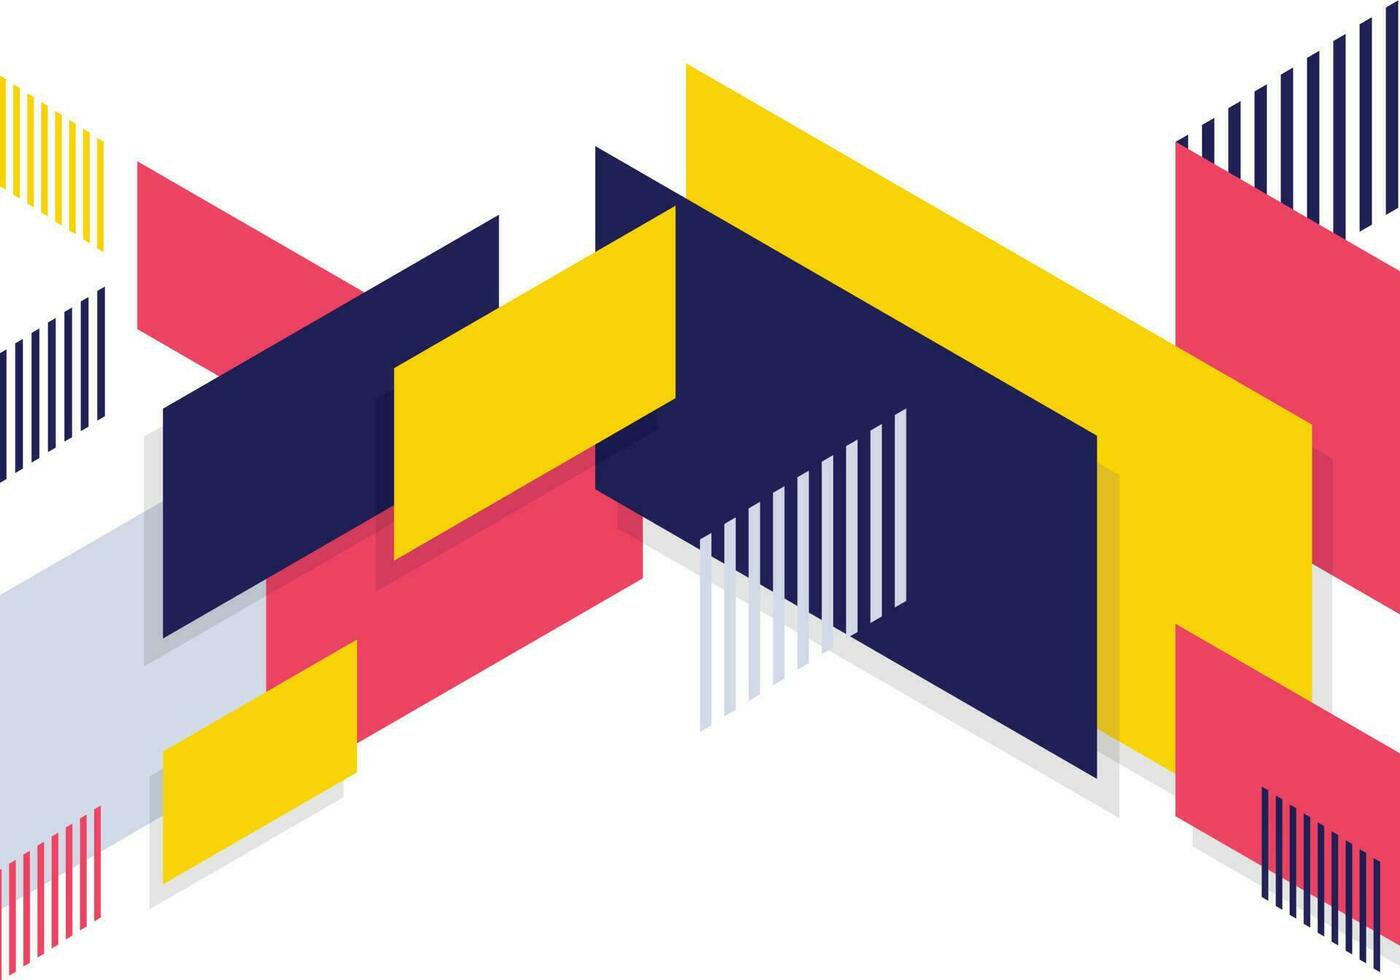 kleurrijk meetkundig achtergrond sjabloon banier en Memphis ontwerp met modern uniek vorm vector